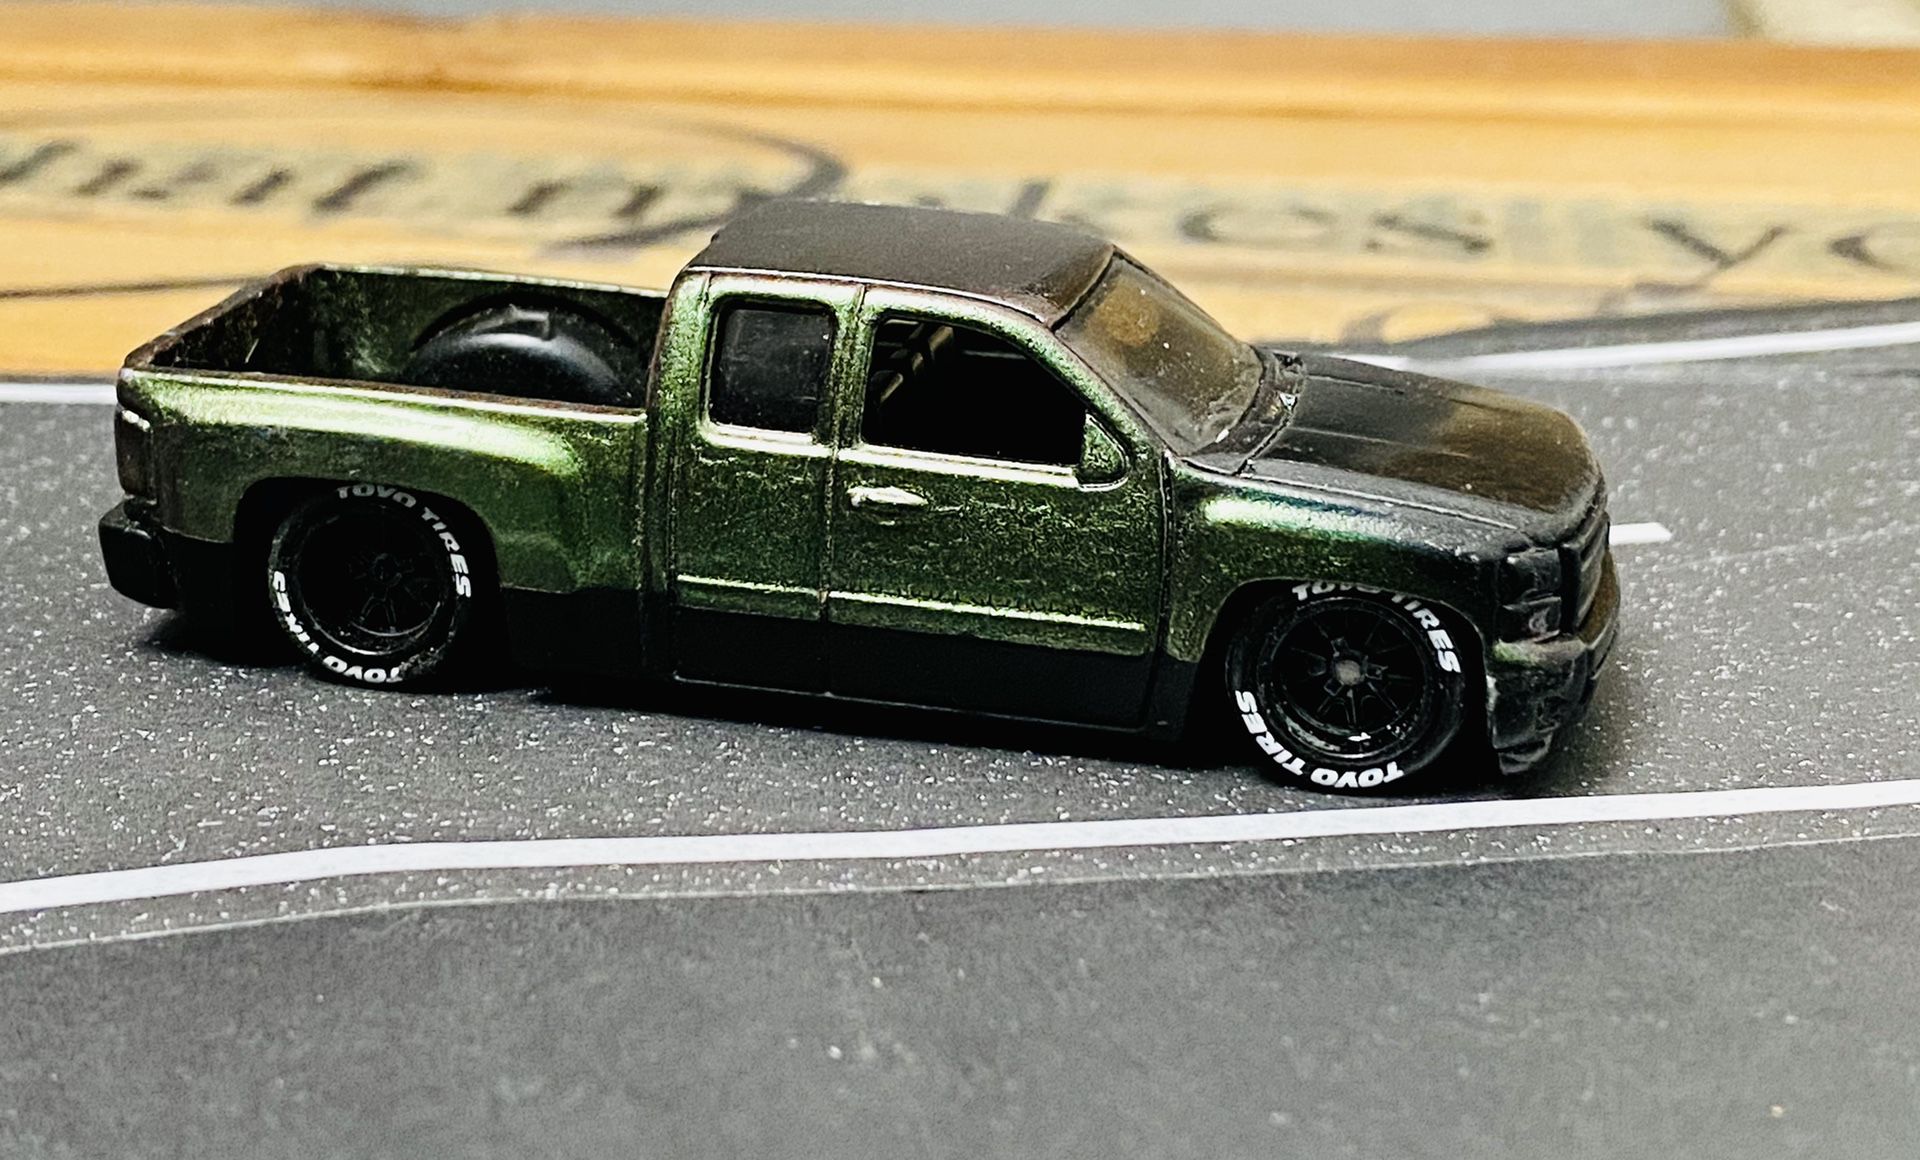 Hotwheels custom Chevy Silverado with Rubber Wheels